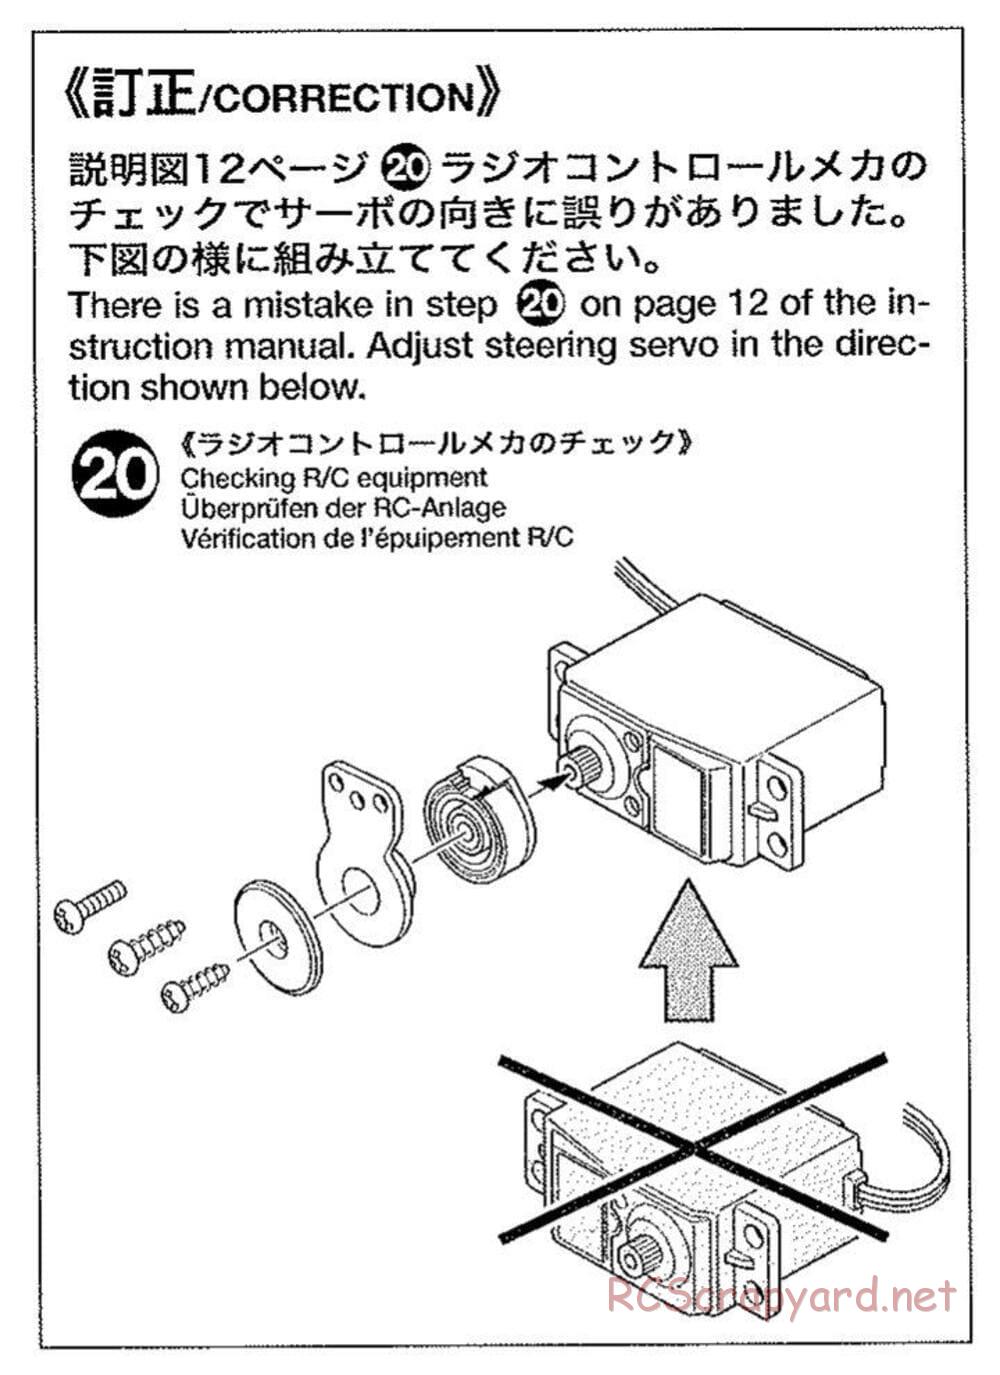 Tamiya - TB Evolution III Chassis - Manual - Page 2